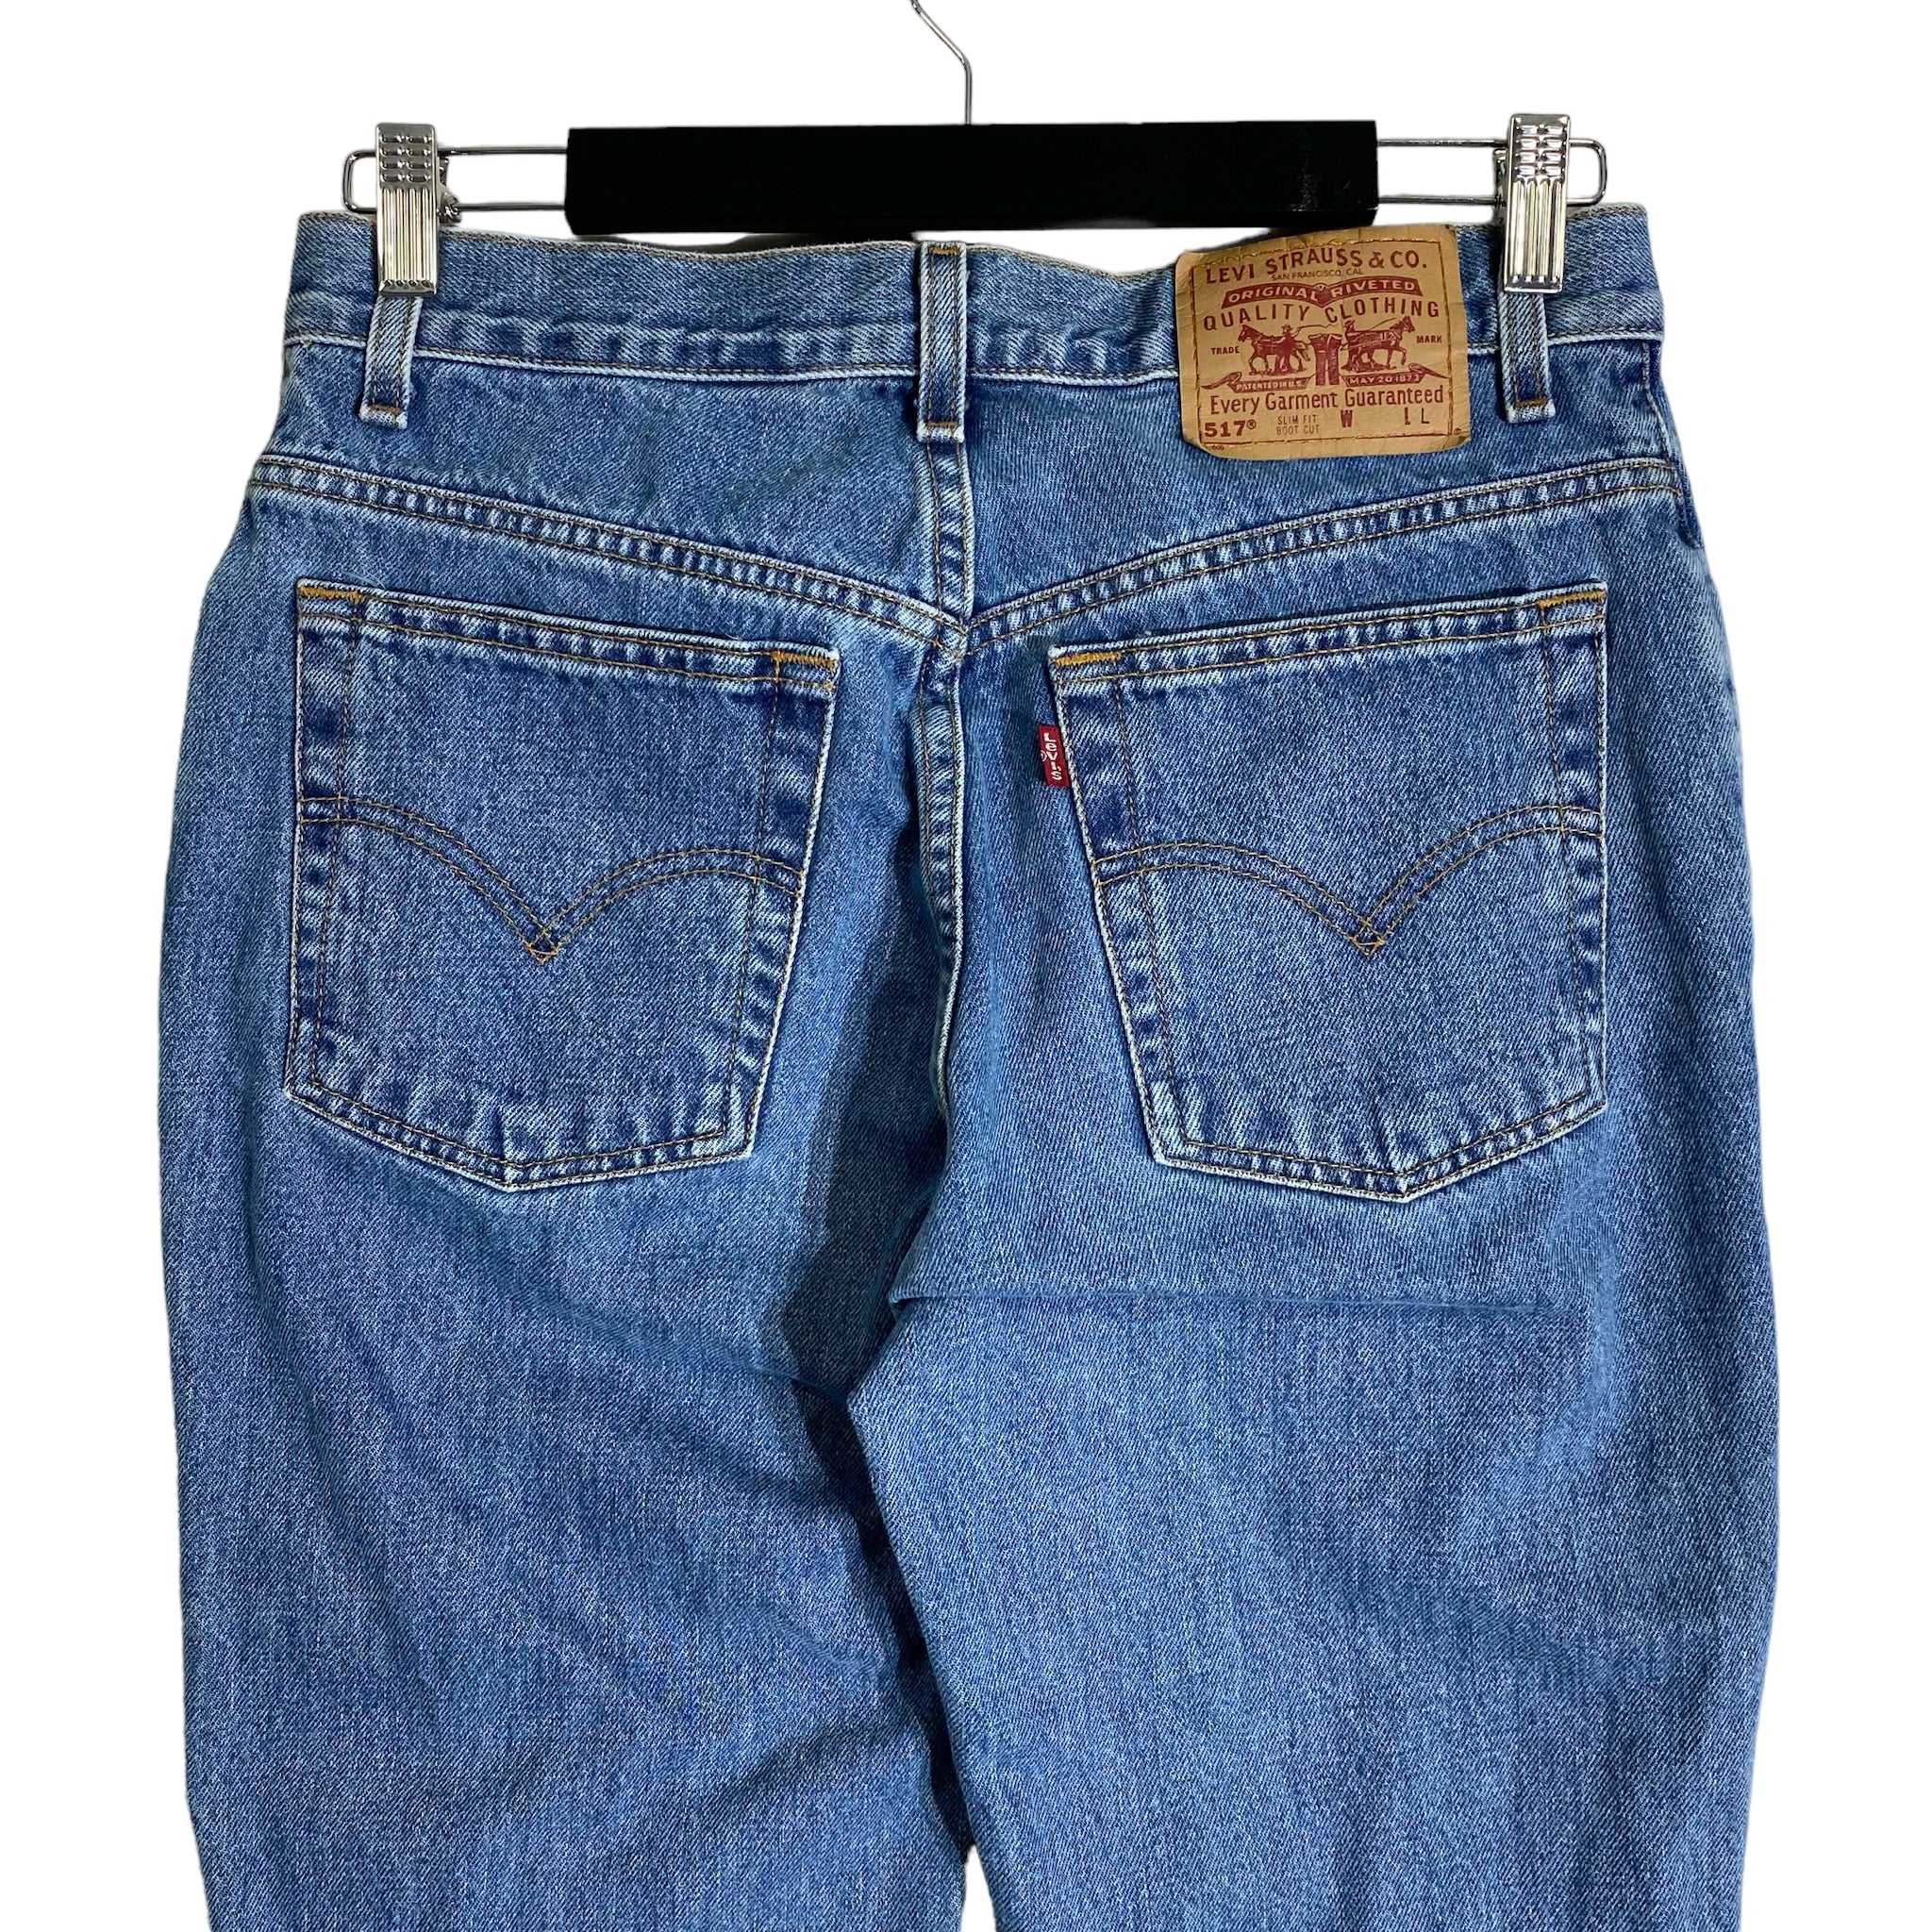 Vintage Levi's 517 Boot Cut Women's Jeans